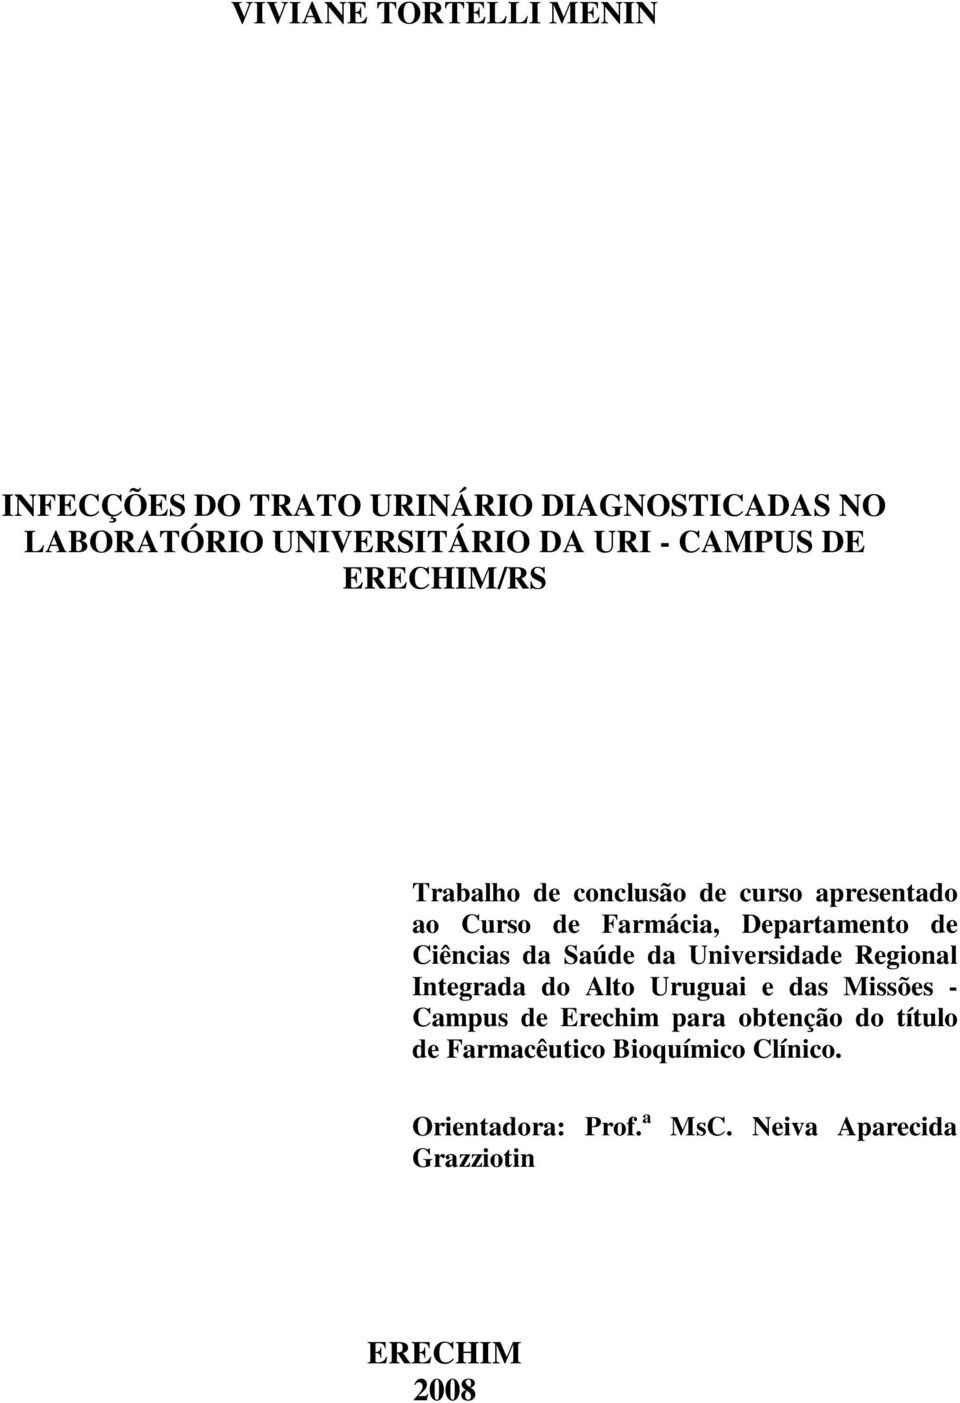 Ciências da Saúde da Universidade Regional Integrada do Alto Uruguai e das Missões - Campus de Erechim para